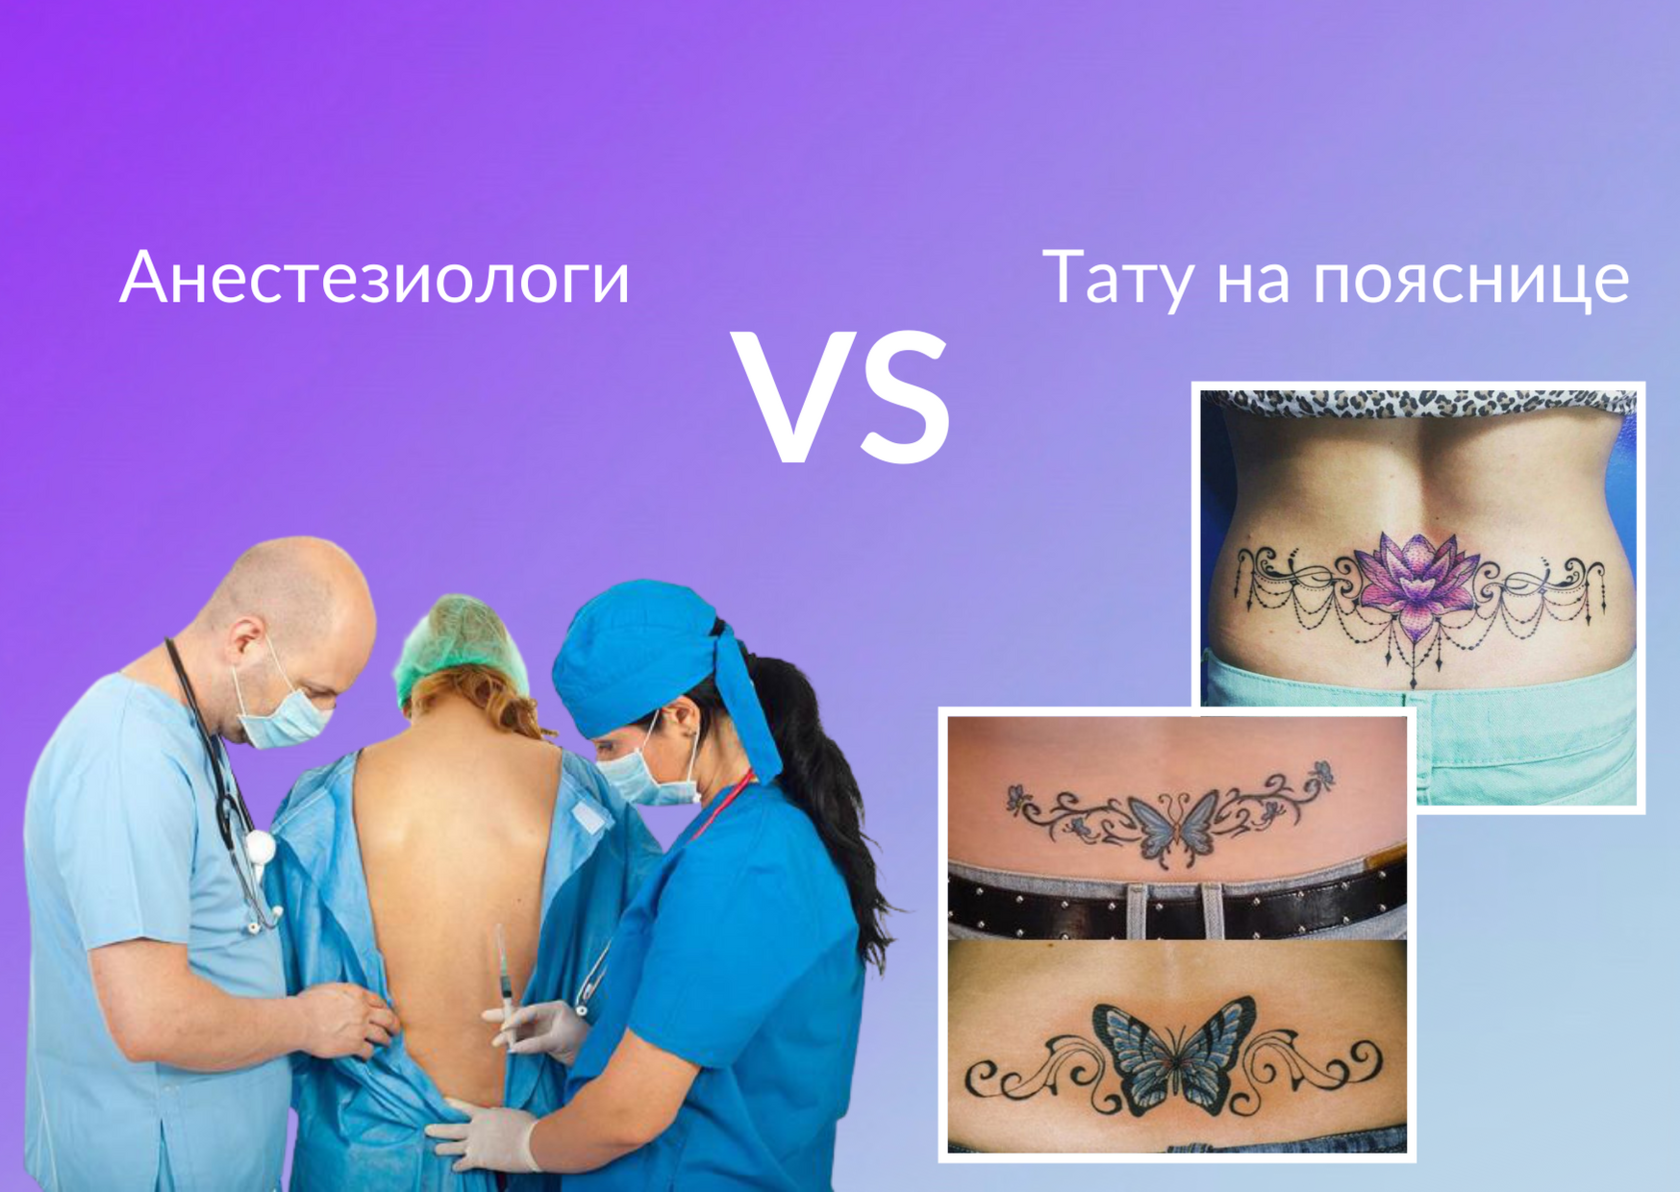 Татуировки и женский организм: когда можно делать тату, а когда лучше отложить процедуру?